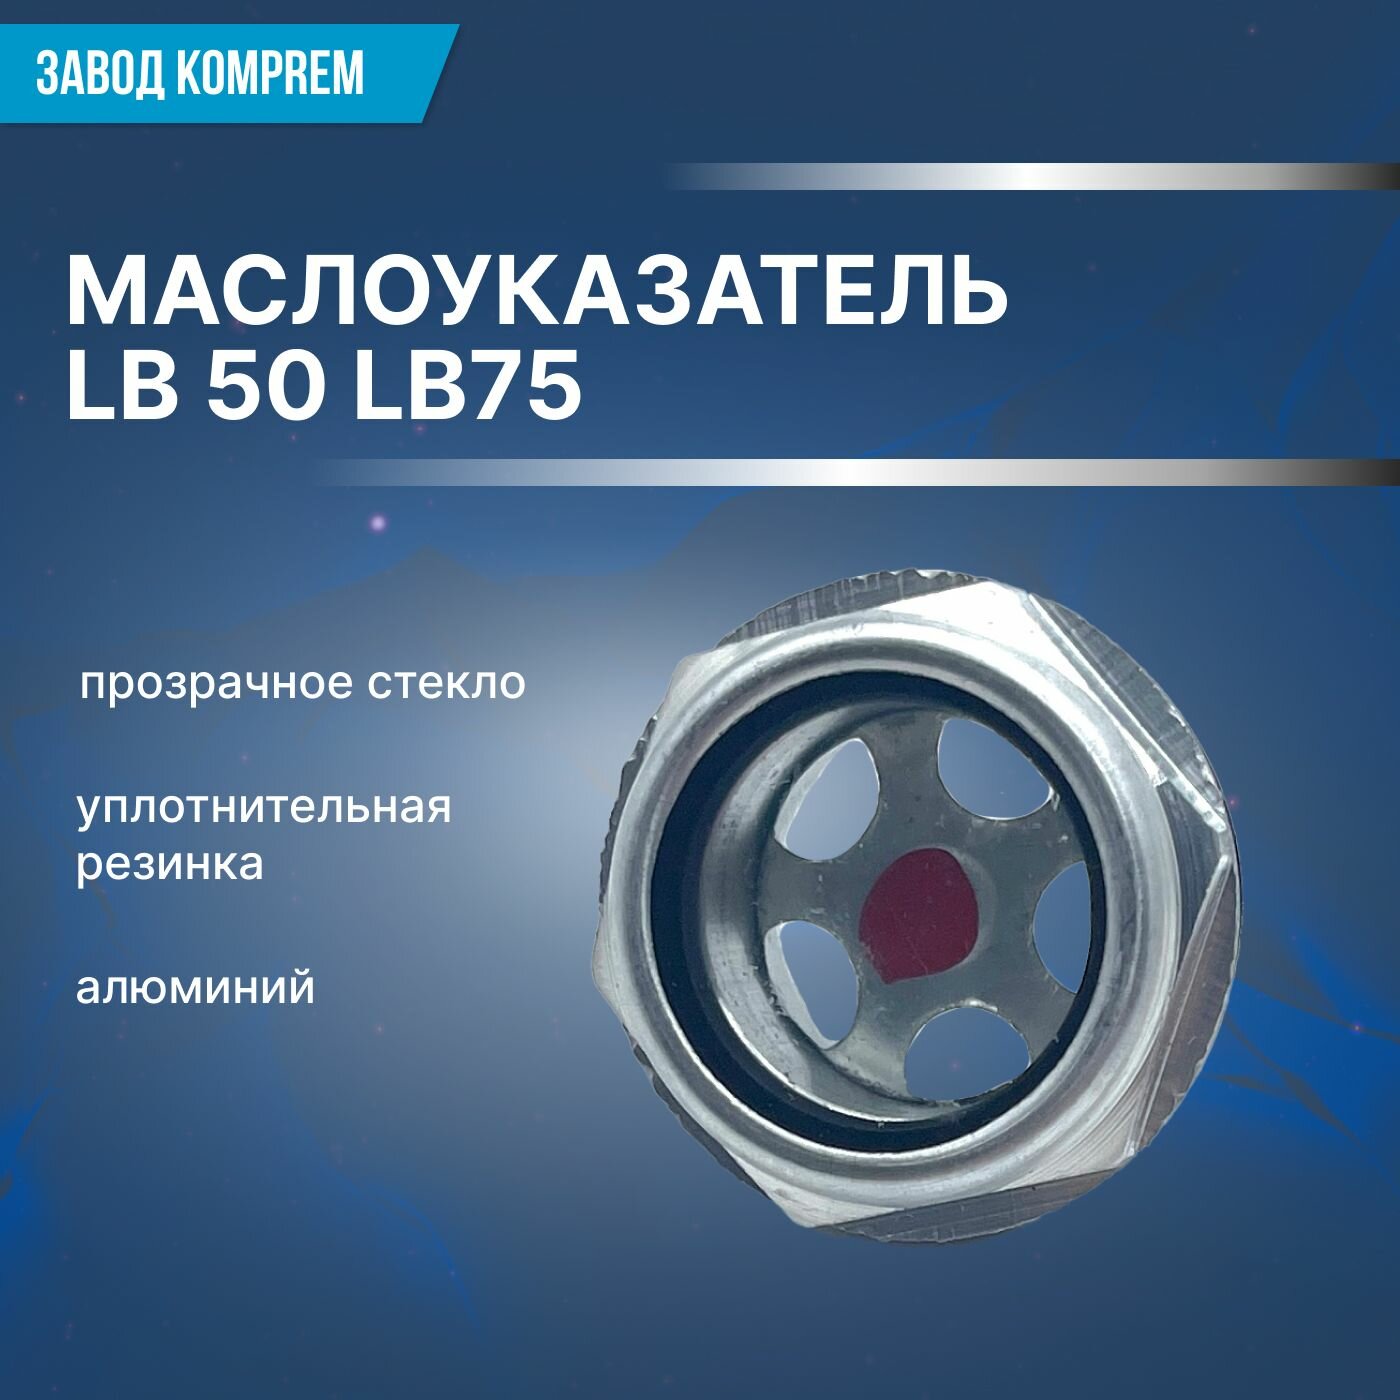 Маслоуказатель LB50 LB75 глазок уровня масла для воздушного компрессора Komprem алюминий